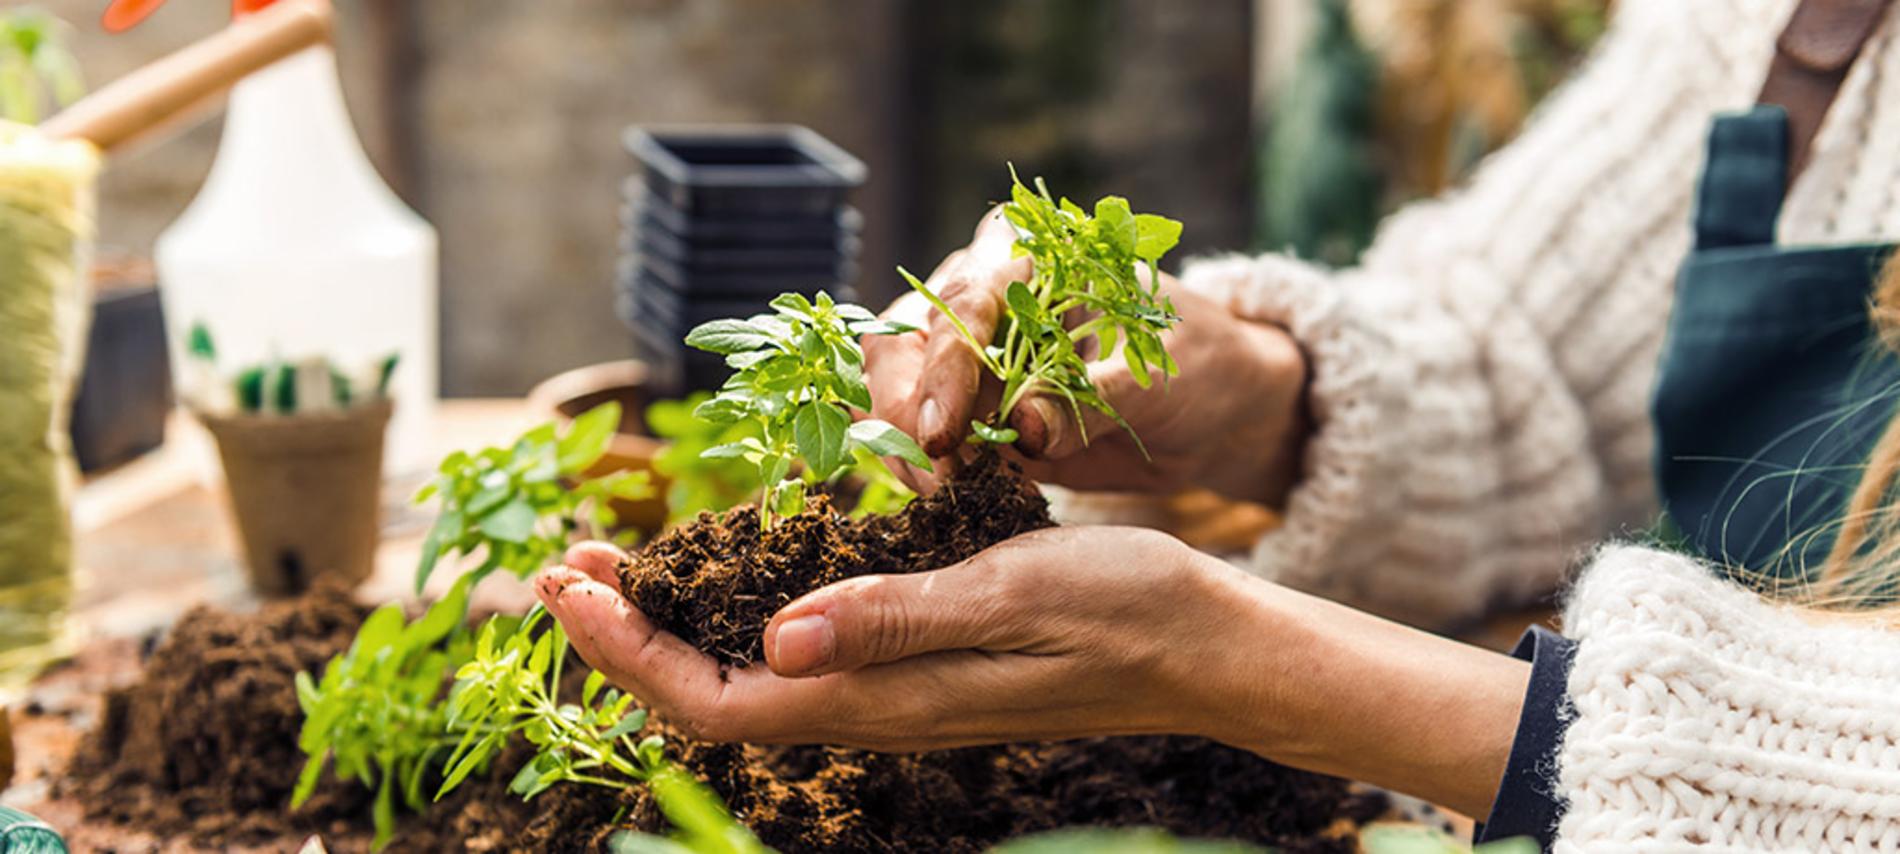 Plantas y alimentos medicinales que podemos cultivar en casa 